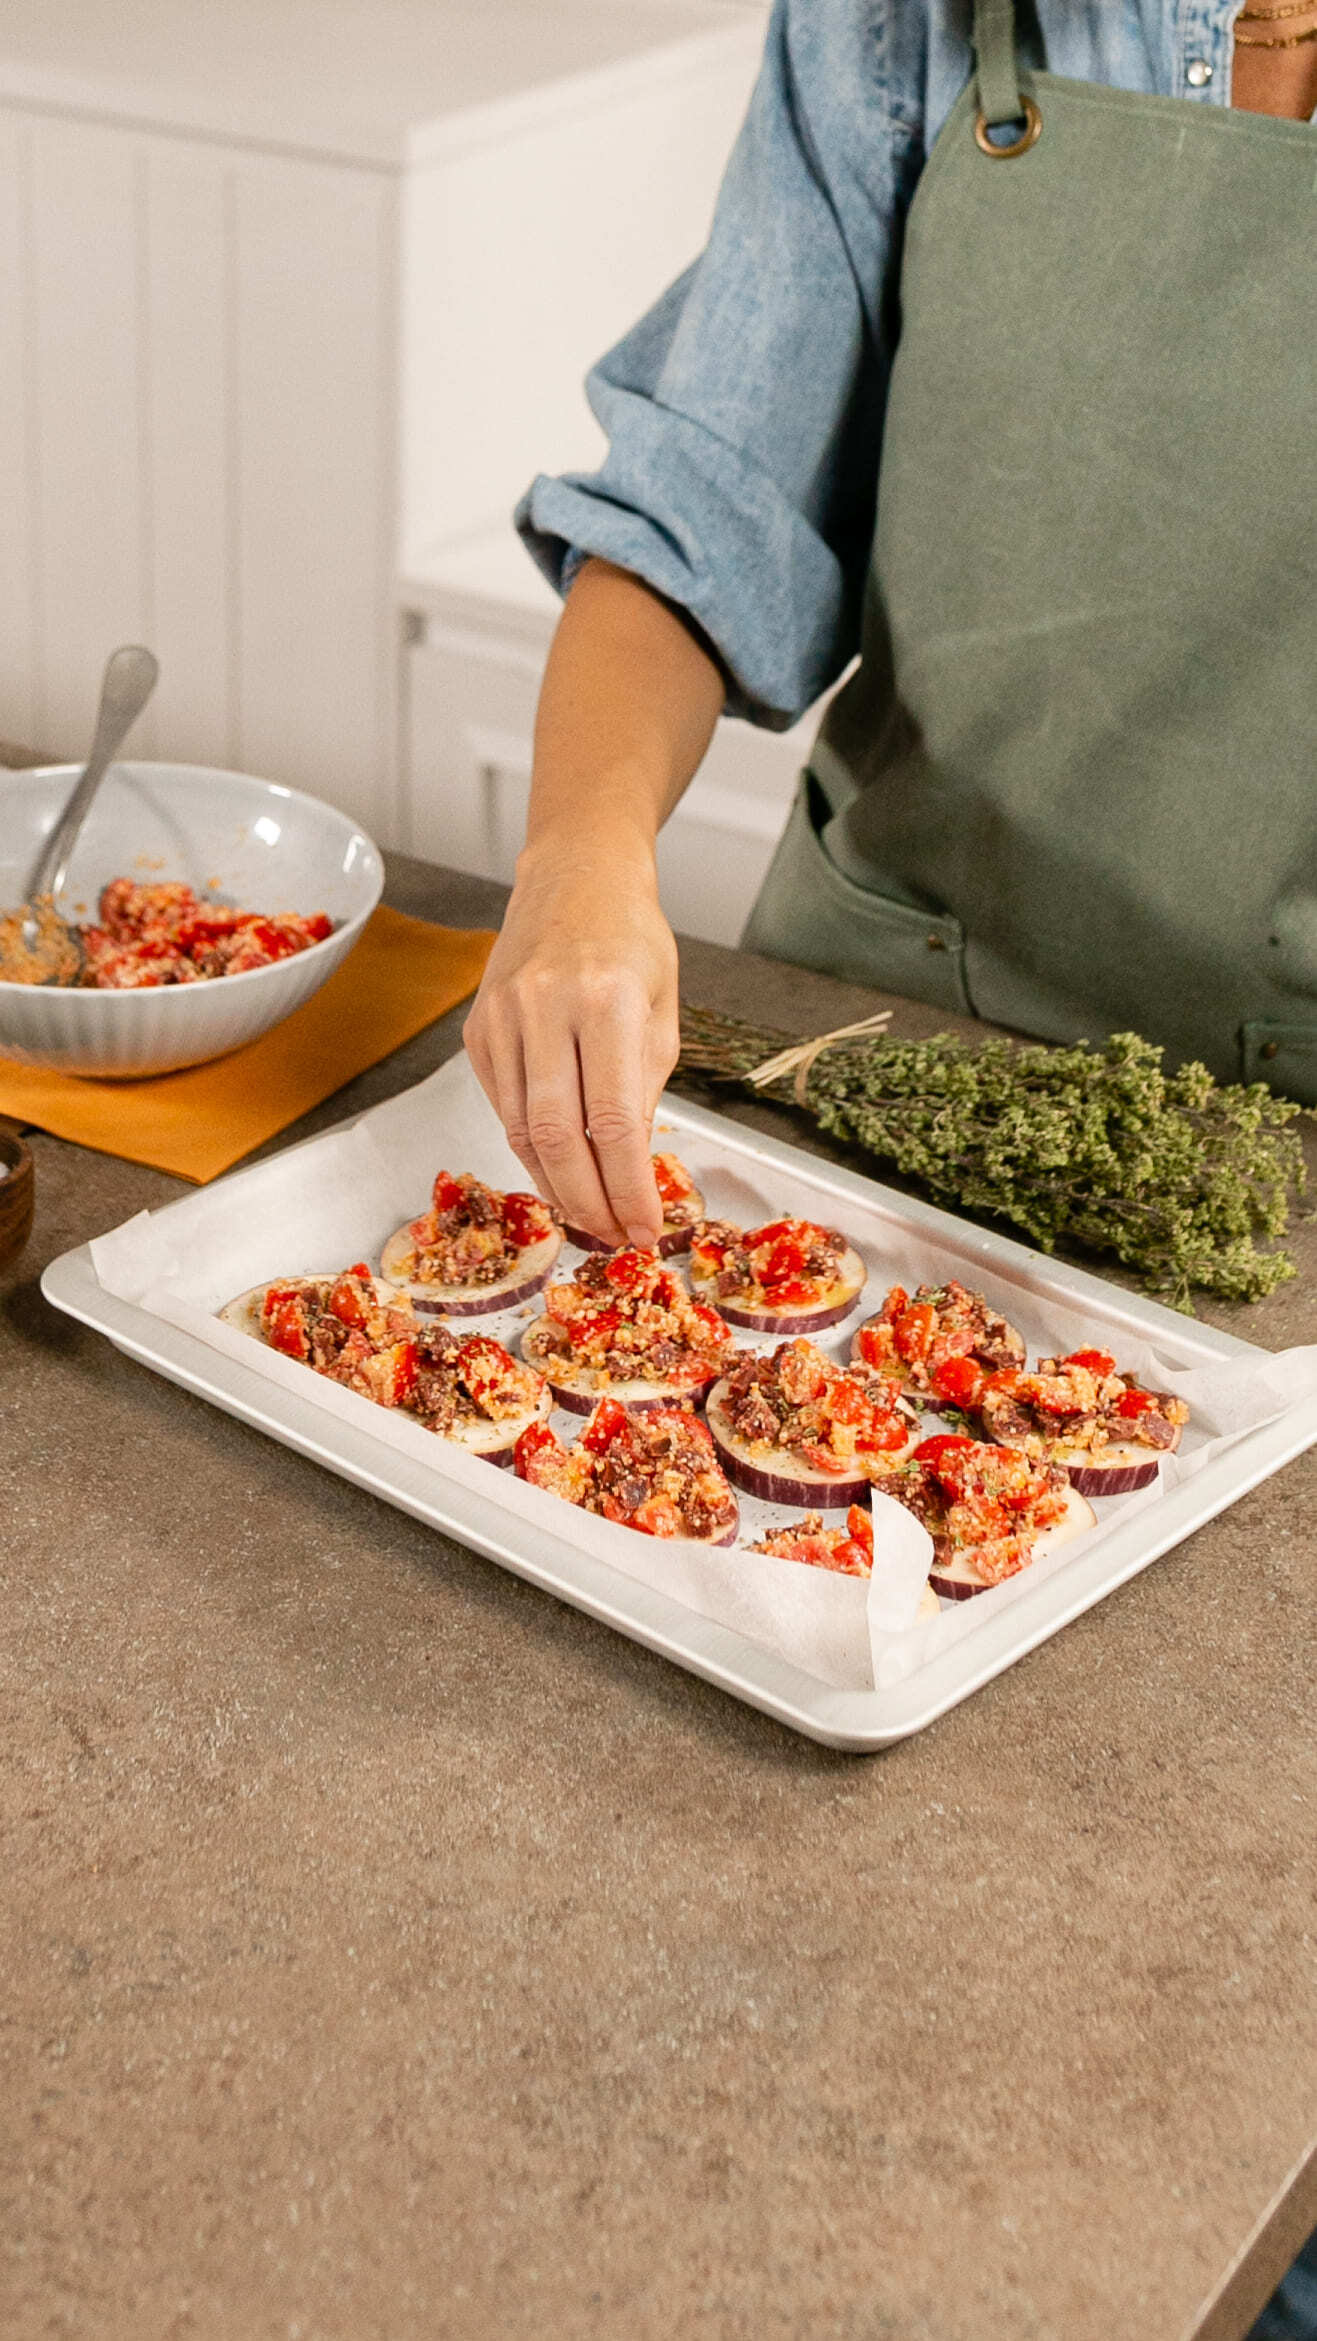 Distribuisci il ripieno precedentemente preparato sulle fettine di melanzana, aggiungi un filo d’olio e spolverizza con l’origano secco.